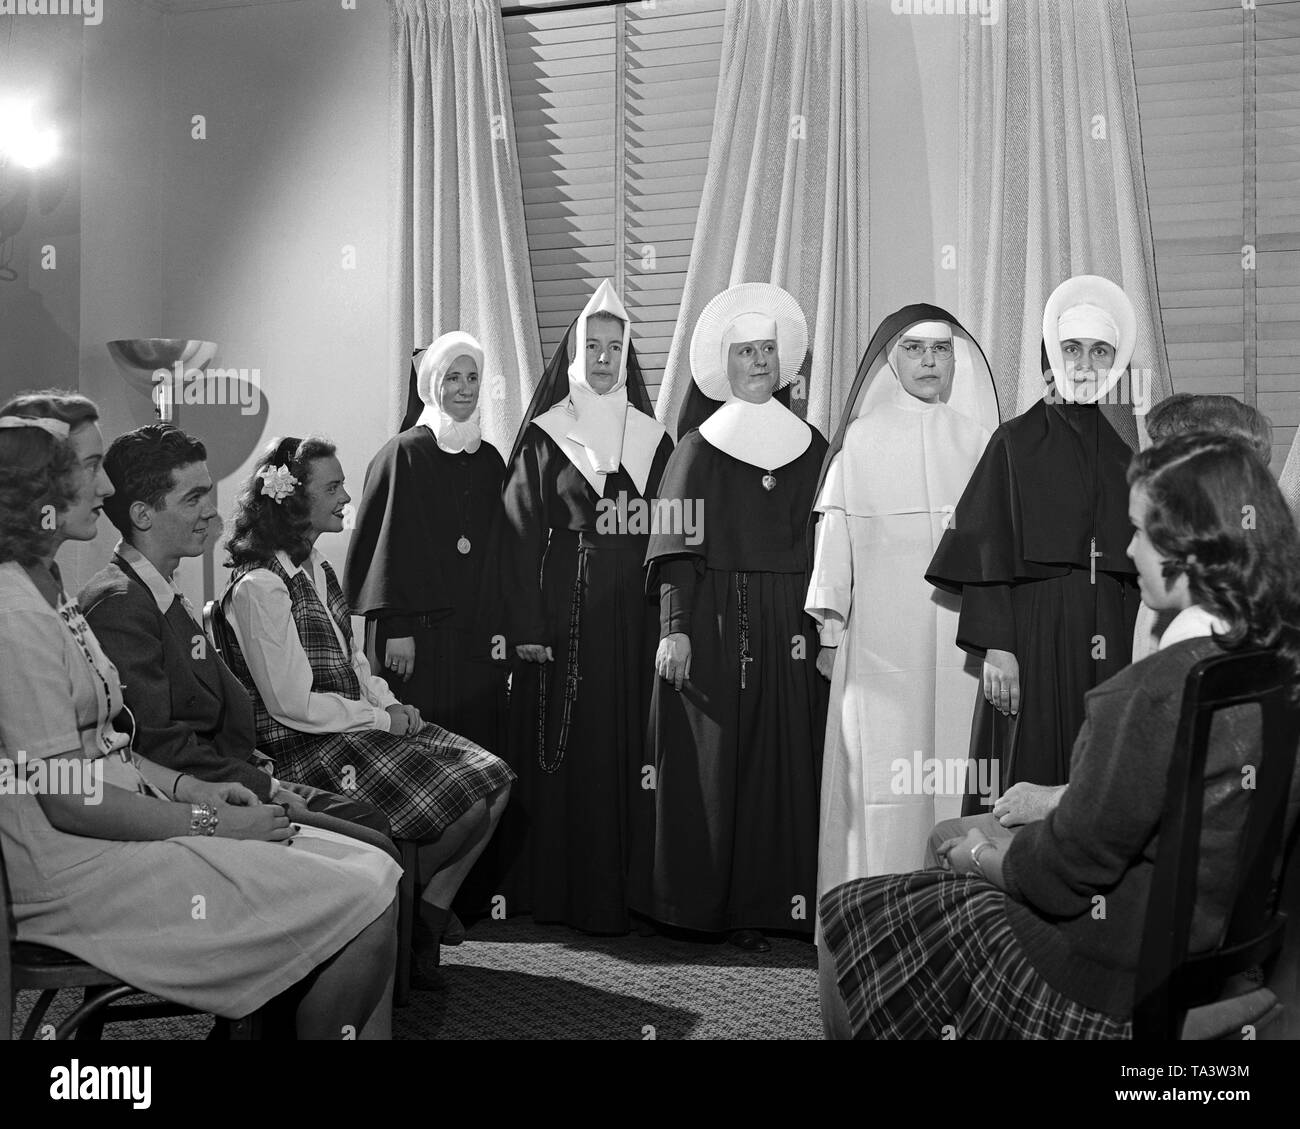 Katholische Nonnen, die ausgerichtet werden, um die Anzeige von verschiedenen Moden der Gewohnheiten. Chicago, IL, 1944. Bild von 4x5 Zoll Kamera negativ. Stockfoto